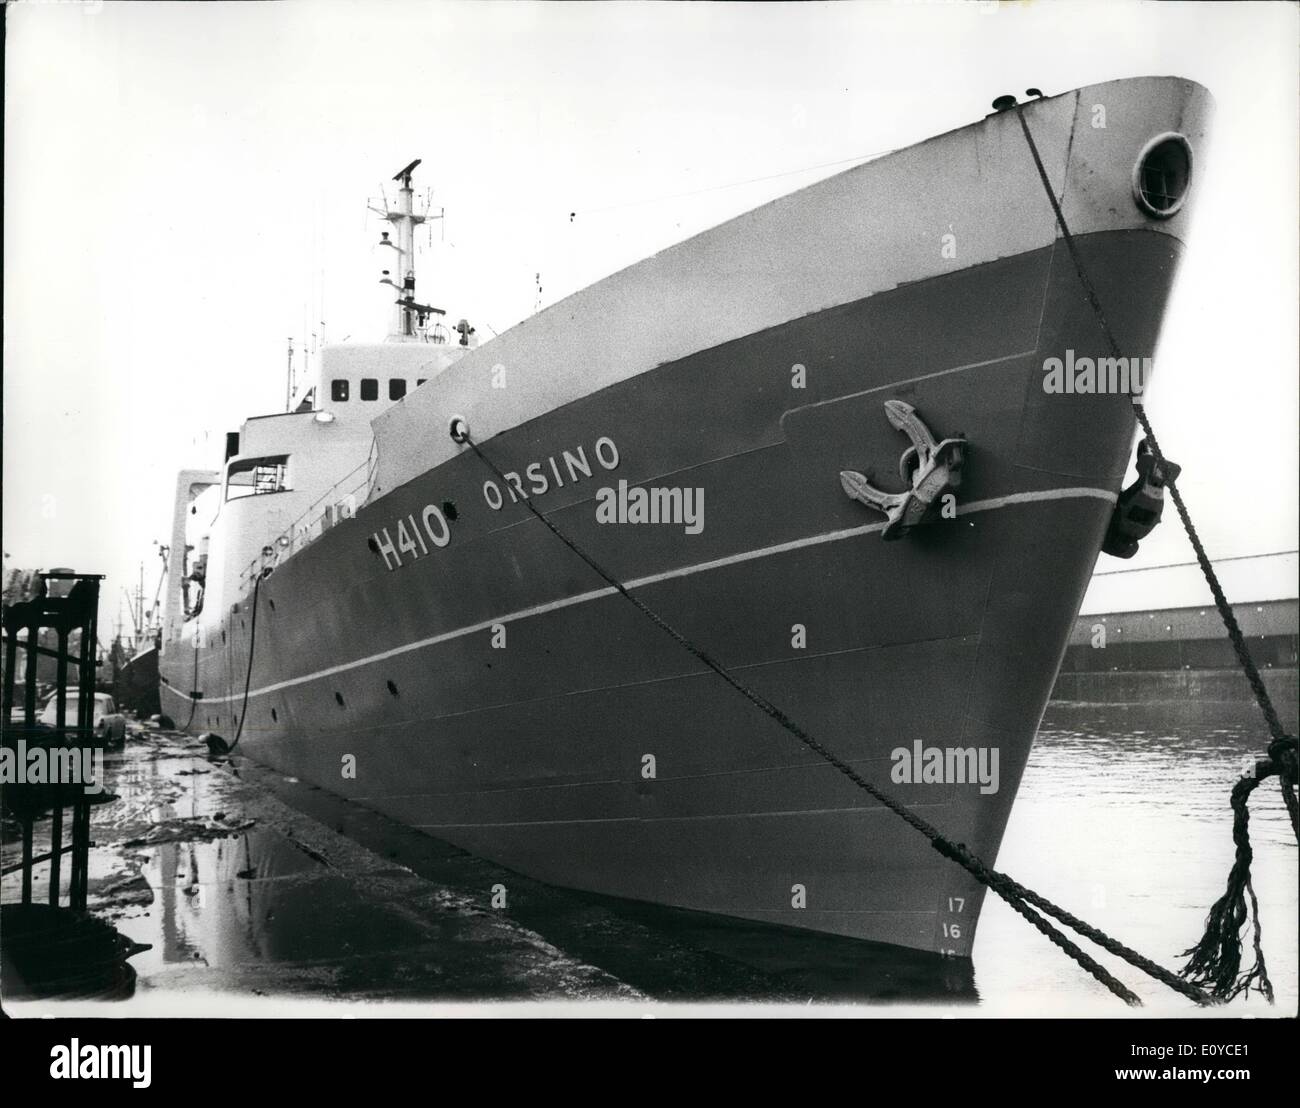 11. November 1969 - Unterstützung Schiff für Trawler Flotte zu nehmen bis Winter Station: Der Trawler '' Orsino'' Unterstützung Schiff für die Fischereiflotte von Island, verließ Hall heute Morgen um ihre Winter-Station zu übernehmen. Sie wird dort bis Ende April Wetter Beratung und Kontrolle über die Sicherheit der Trawler in der Gegend bleiben. '' Orsino'', ein stern Trawler von 1574 BRT hat durch das Board Of Trade von Northern Trawler Ltd. des Rumpfes gechartert wurde, sie wurde angepasst zu Funkanlagen zu bedienen und verfügt über eine Krankenstation, eine Operation und ein Krankenhaus Stockfoto